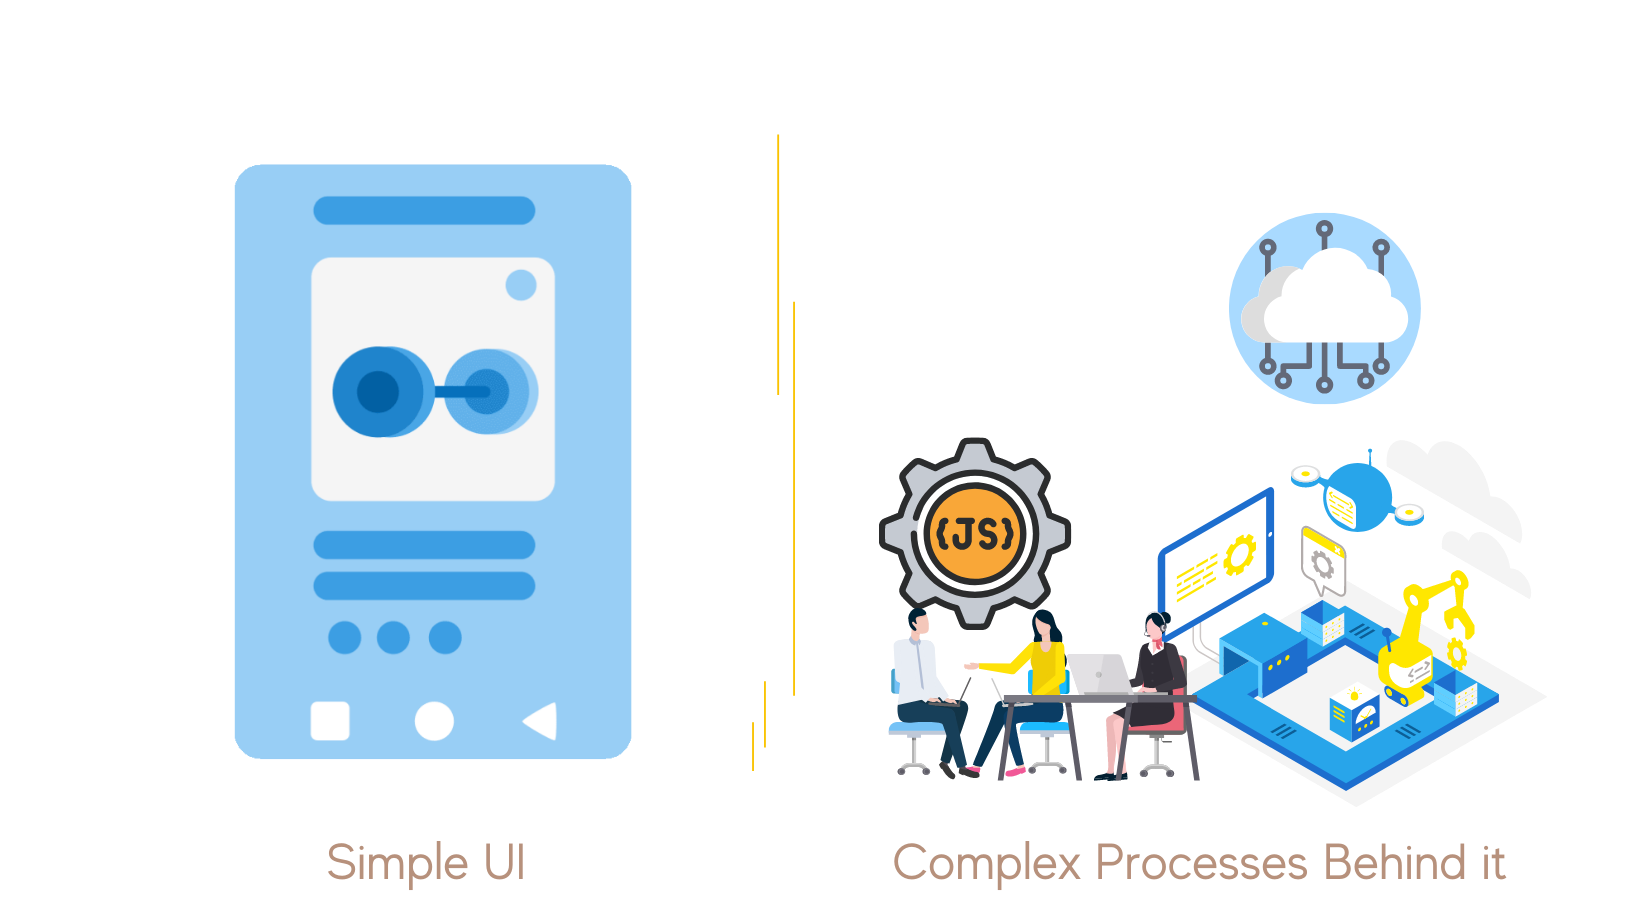 Interface utilisateur versus Processus complexes